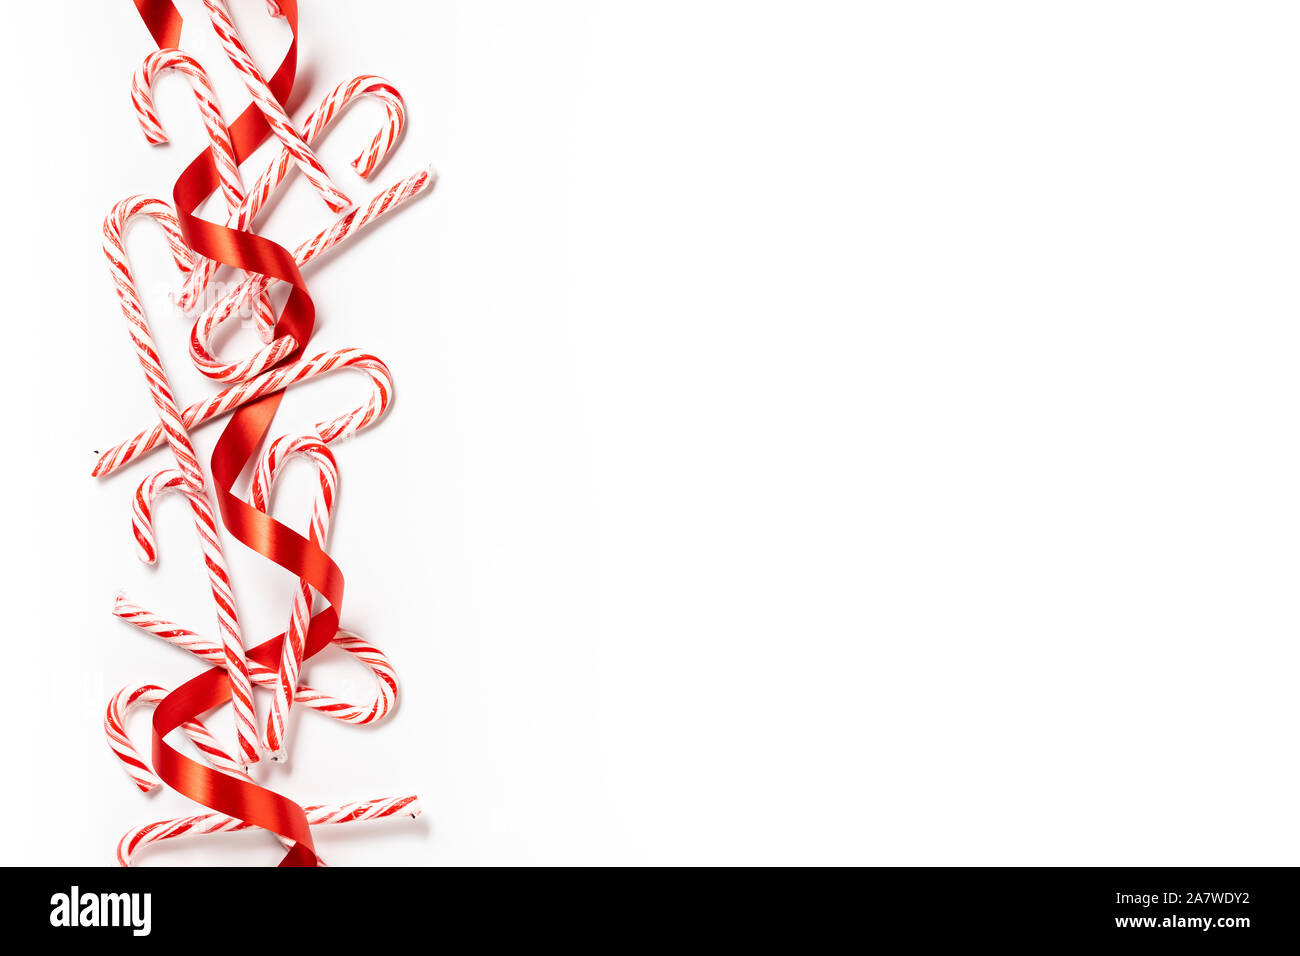 Canne de Noël frontière avec ruban rouge sur fond blanc Banque D'Images